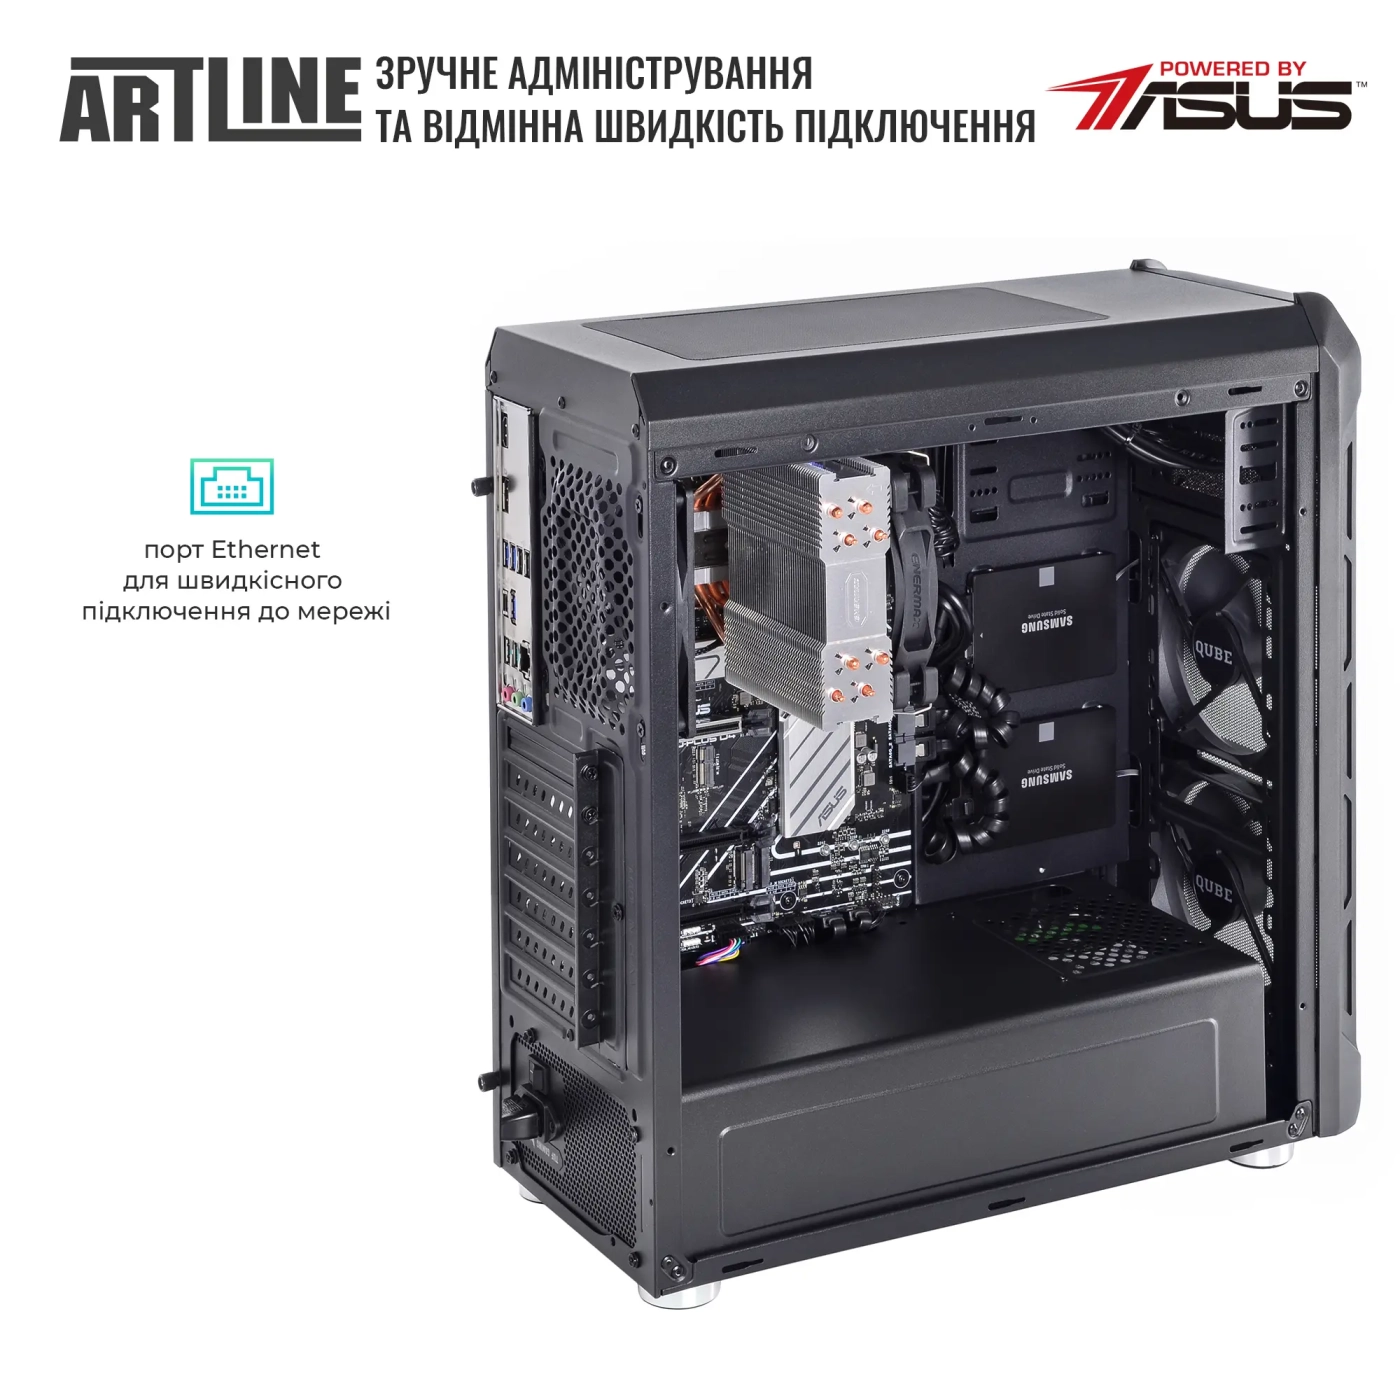 Купить Сервер ARTLINE Business T25 (T25v43) - фото 7